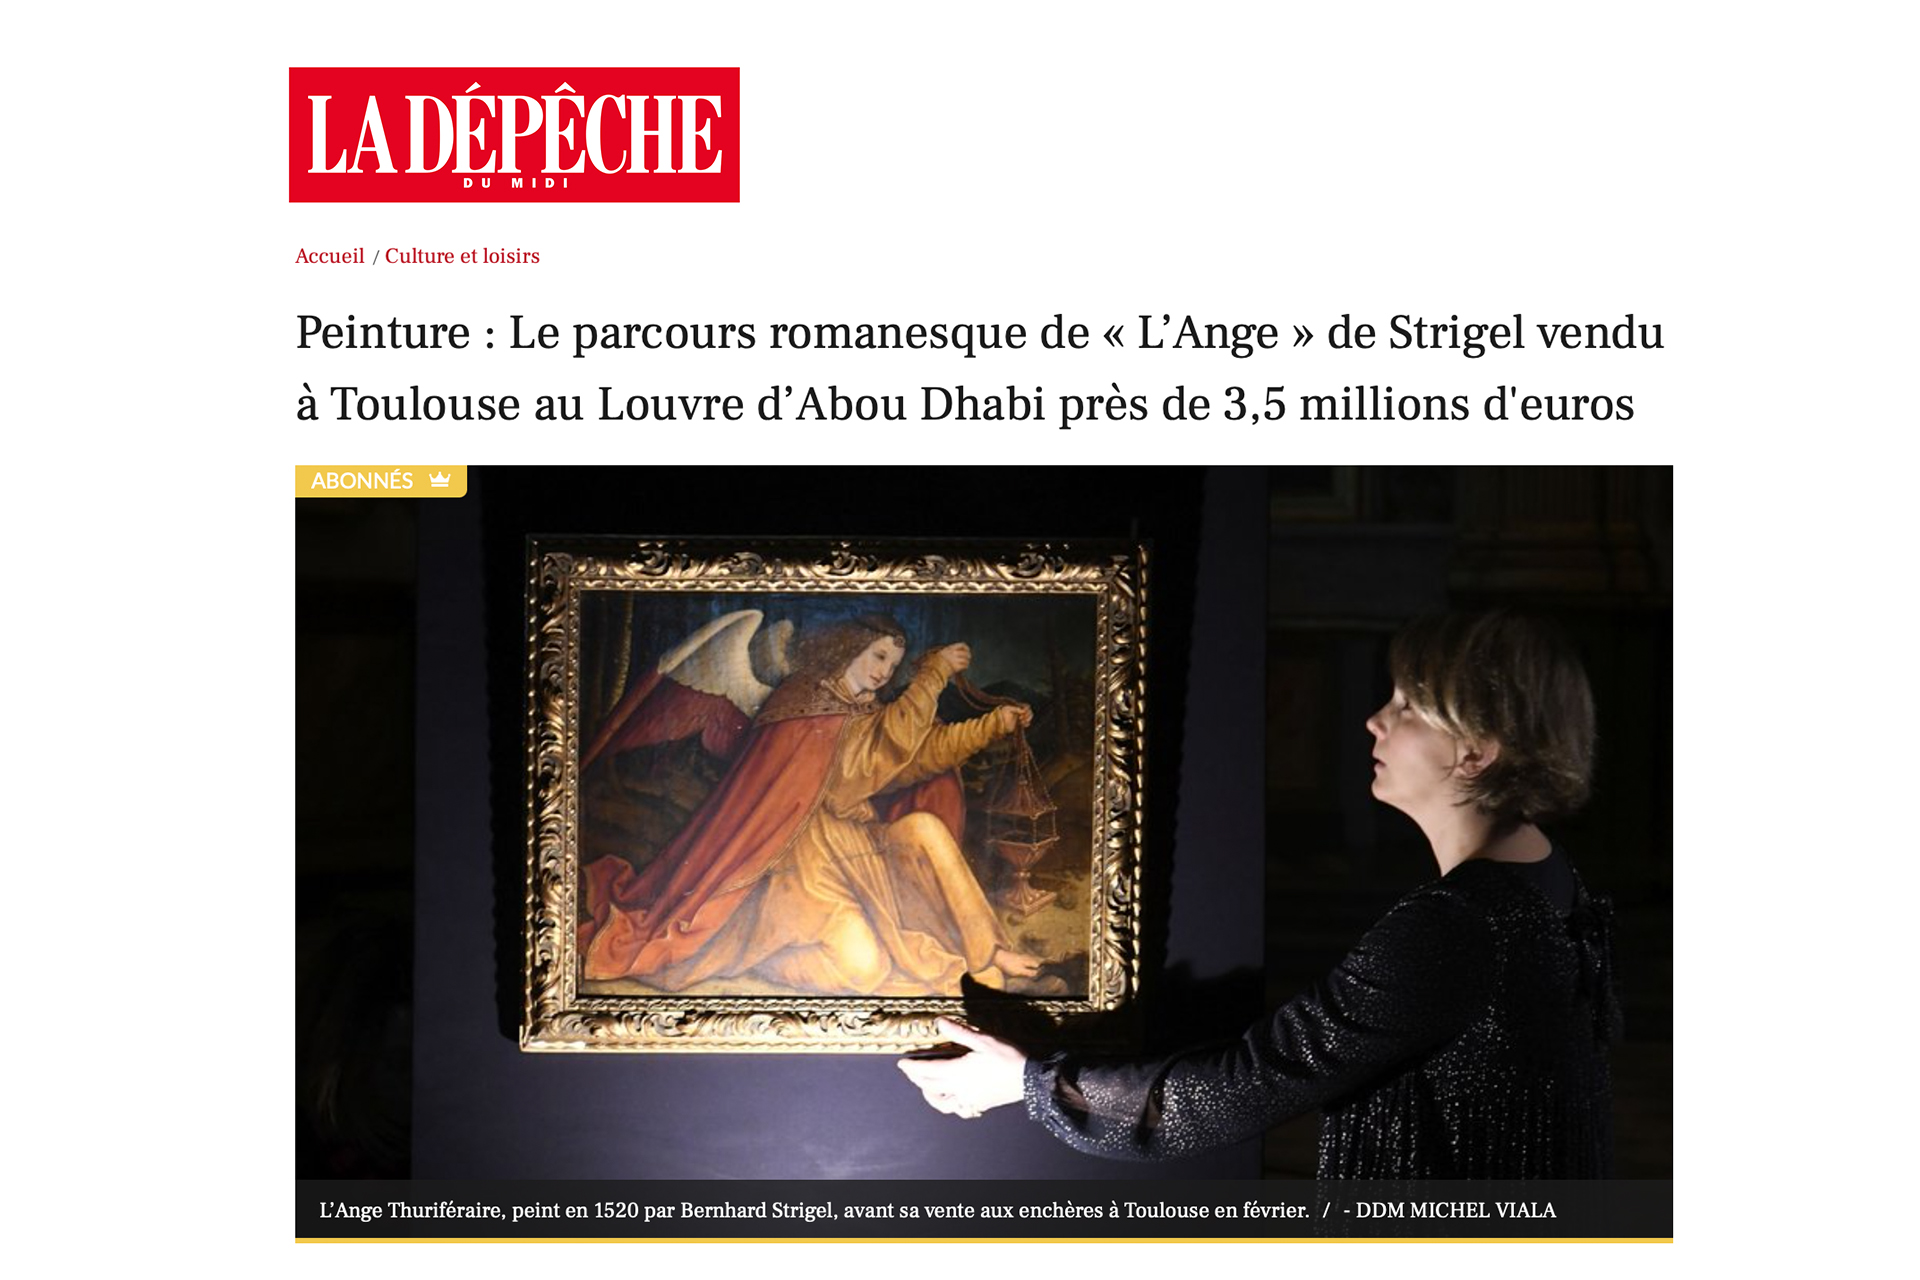 « Le parcours romanesque de L’Ange de Strigel vendu à Toulouse près de 3,5M d’euros », 1er janvier 2023